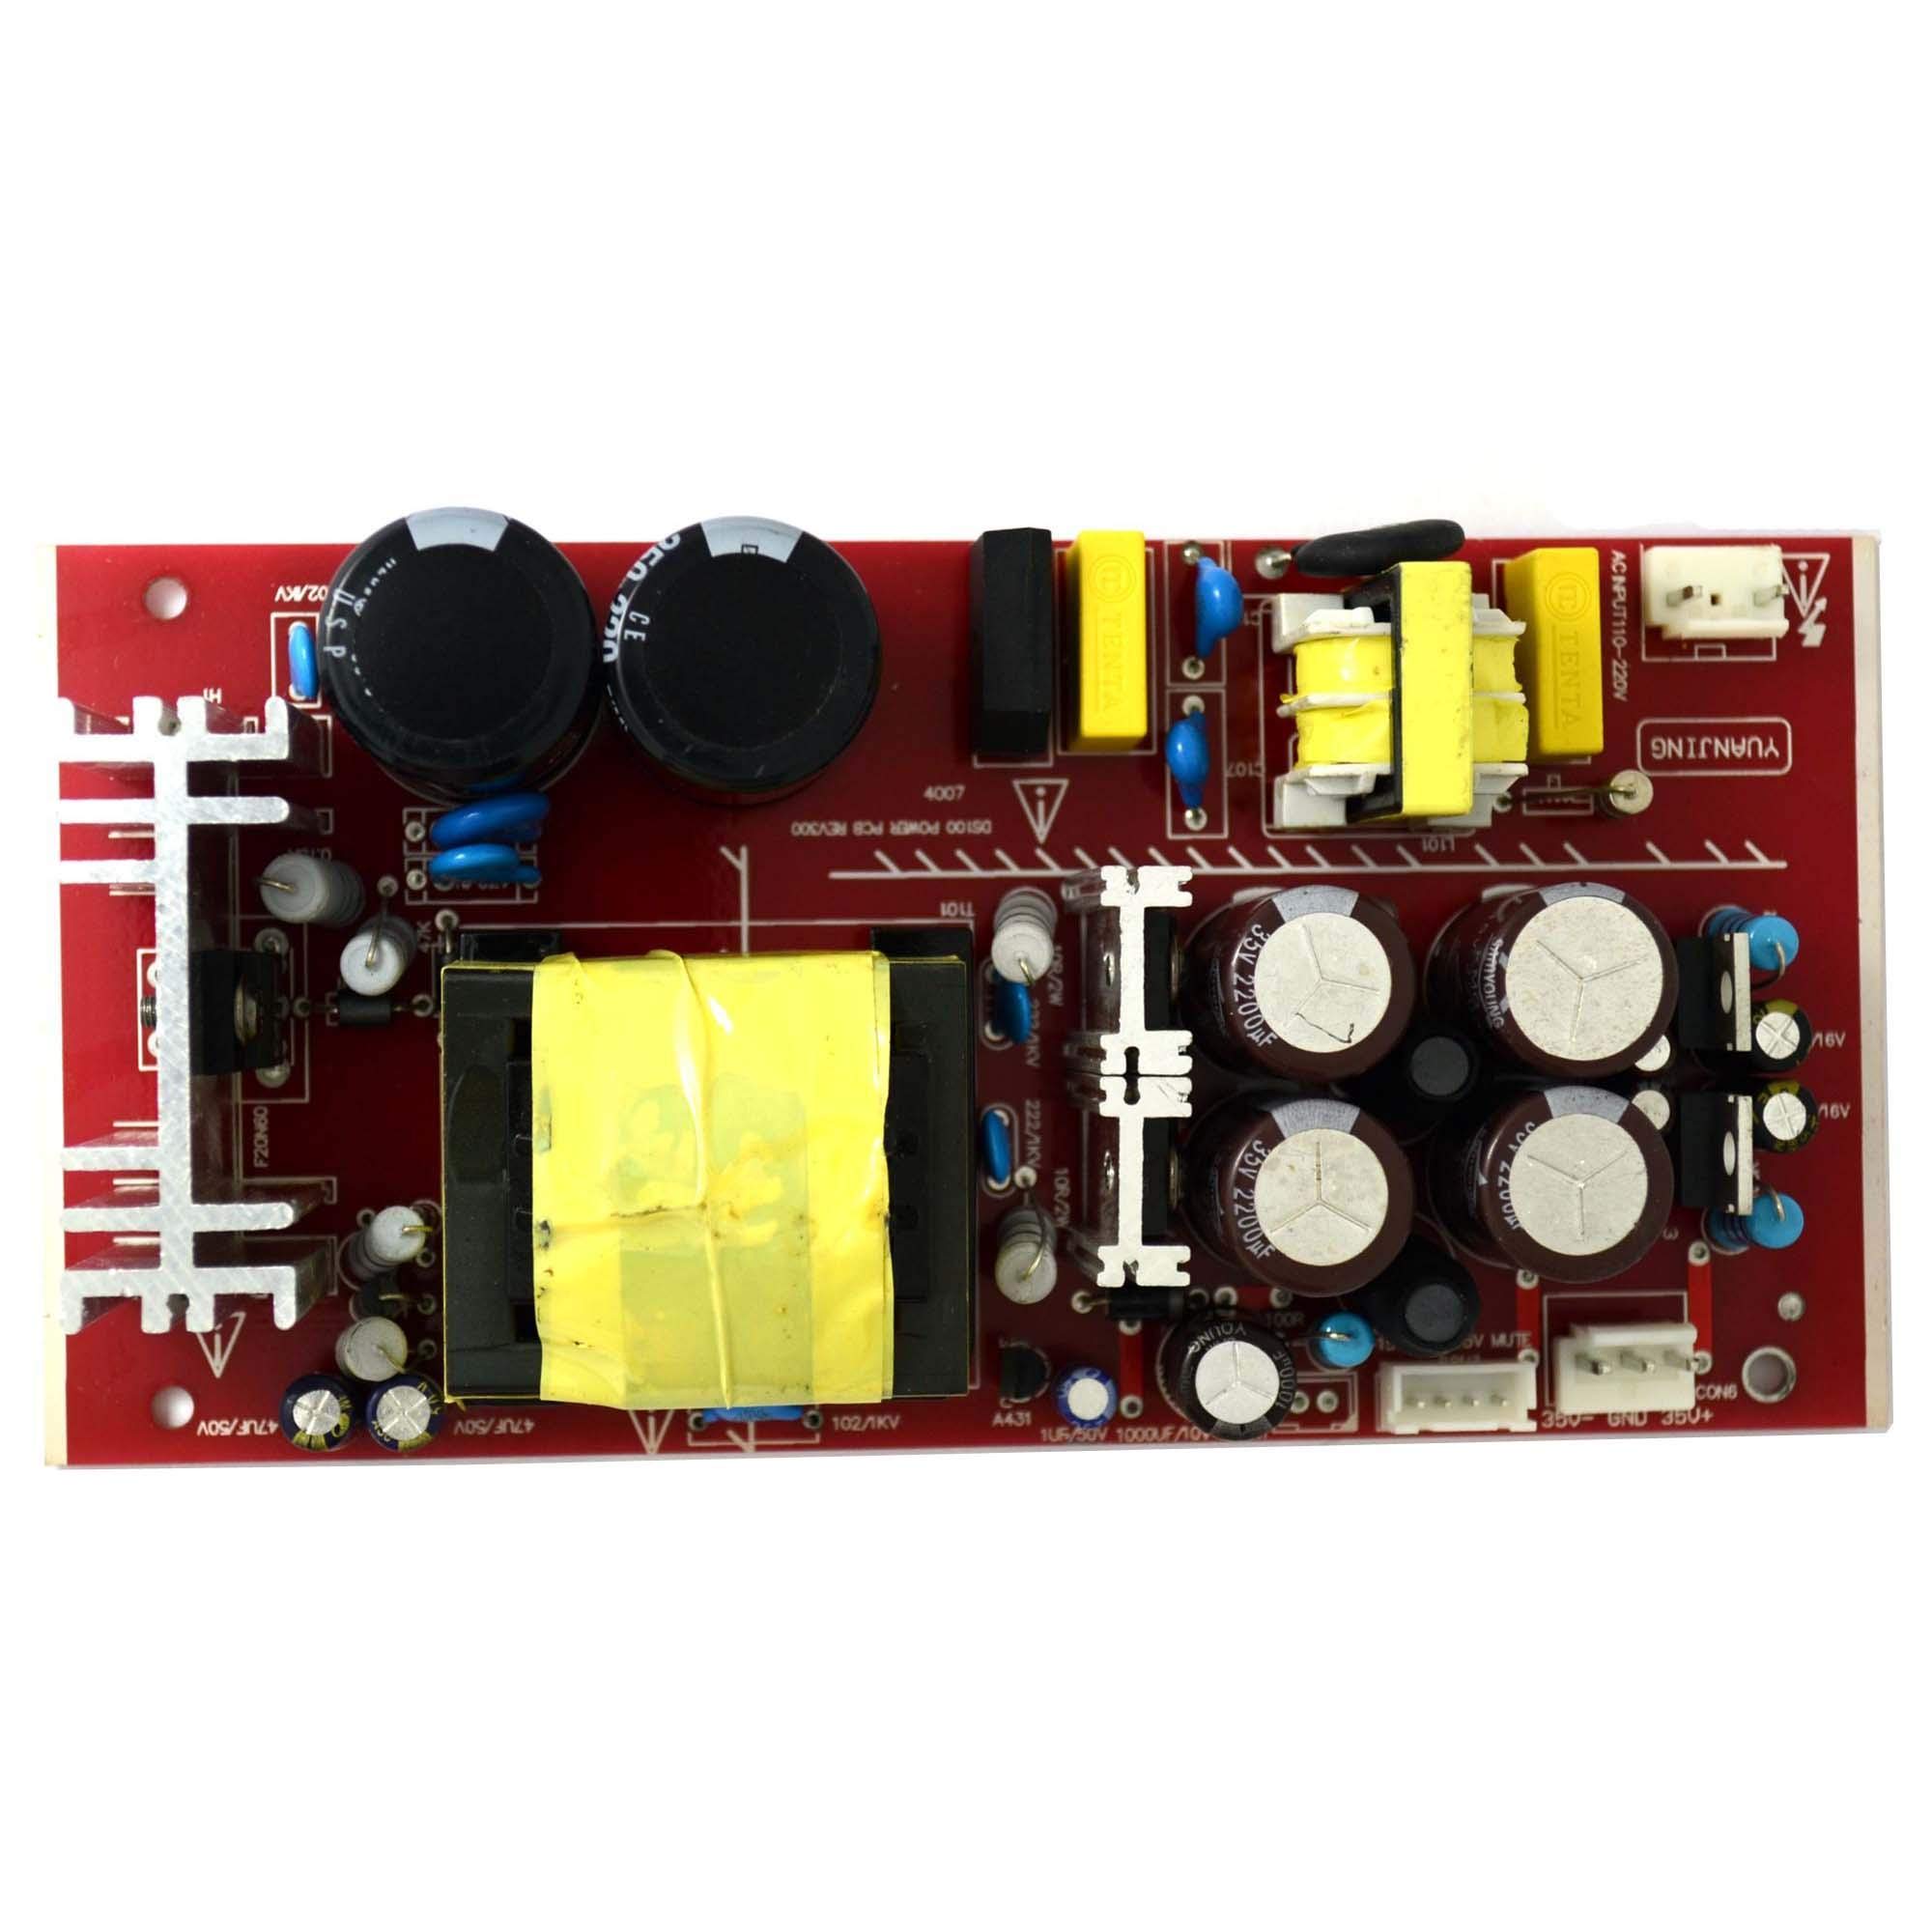 Q-BAIHE 200 W Digital Verstärker Power Supply Board mit Schalter